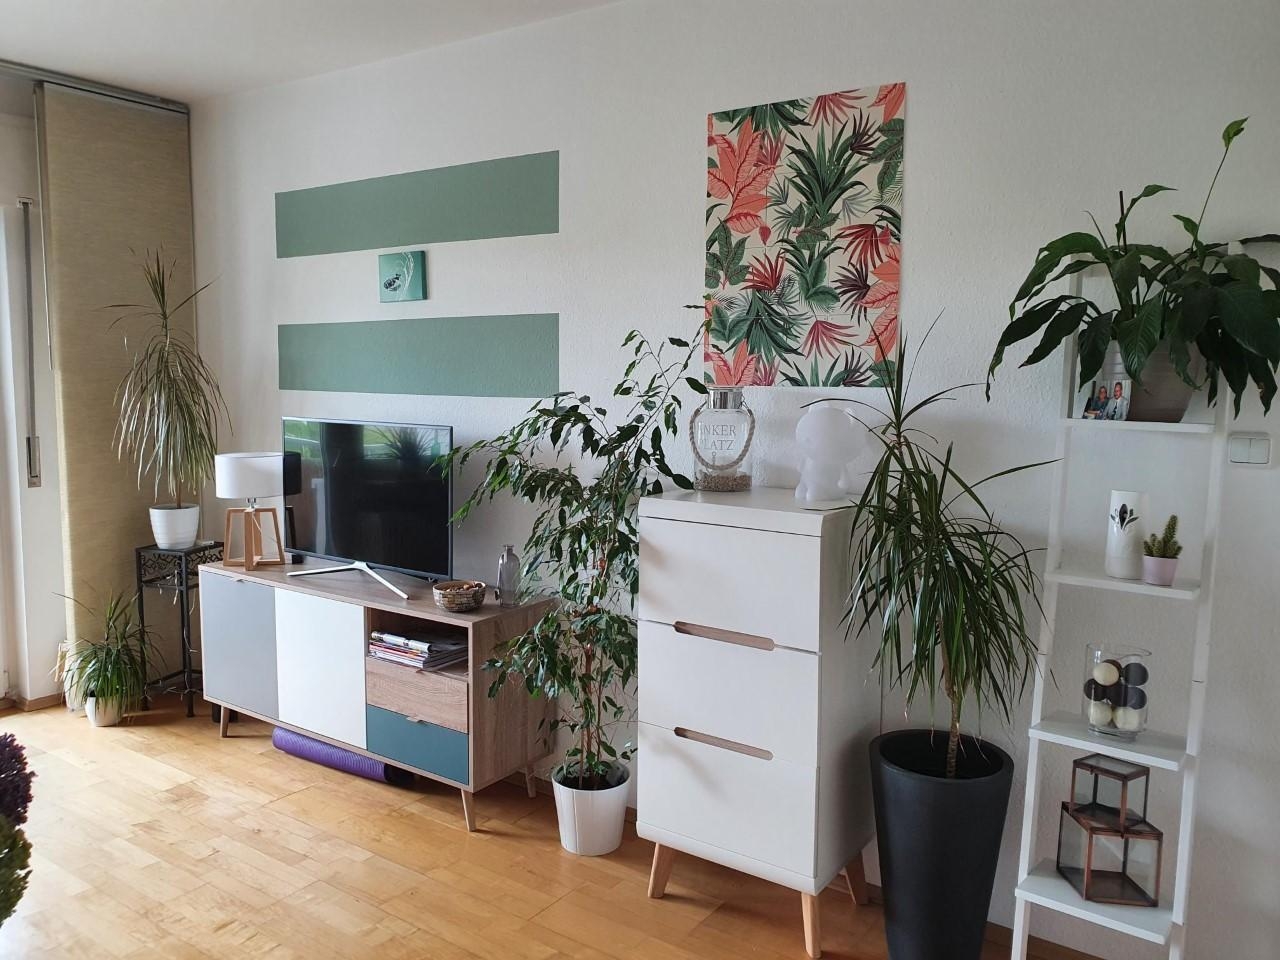 #scandinavian style #whitegreengrey #happy 
Ich liebe mein neues Wohnzimmer im skandinavischen style. Fühle mich pudelwo